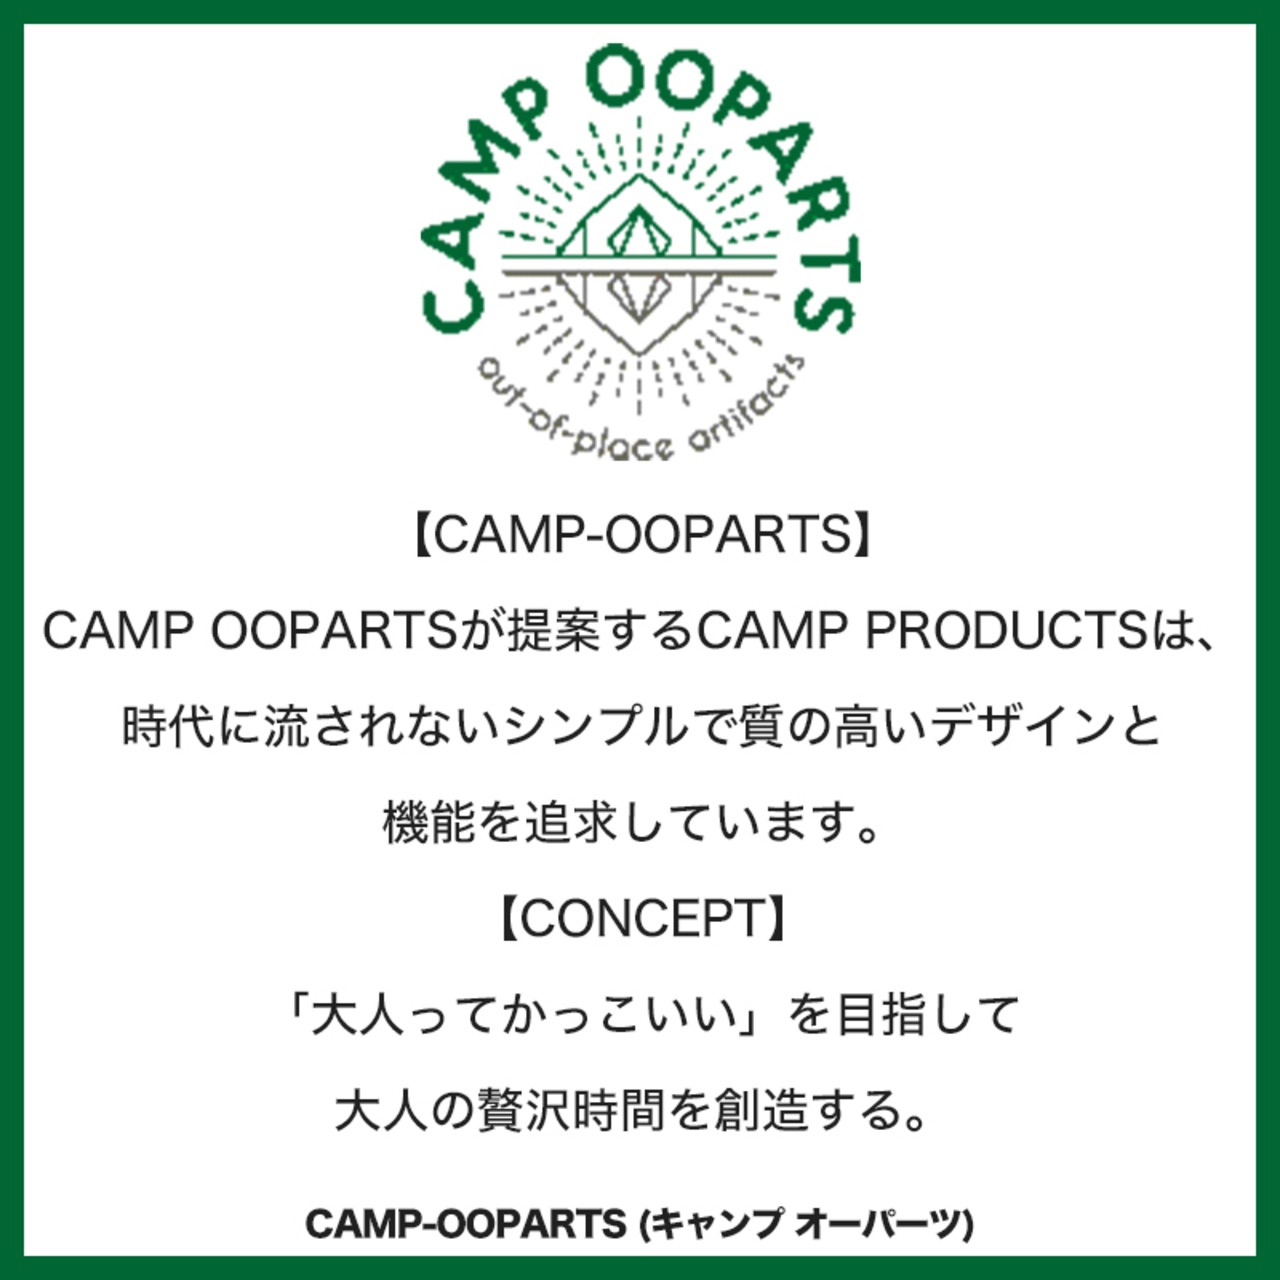 CAMPOOPARTS キャンプオーパーツ H1240-TYPE-CAMPOOPARTS ファイヤートライポットセット トライアングル台付